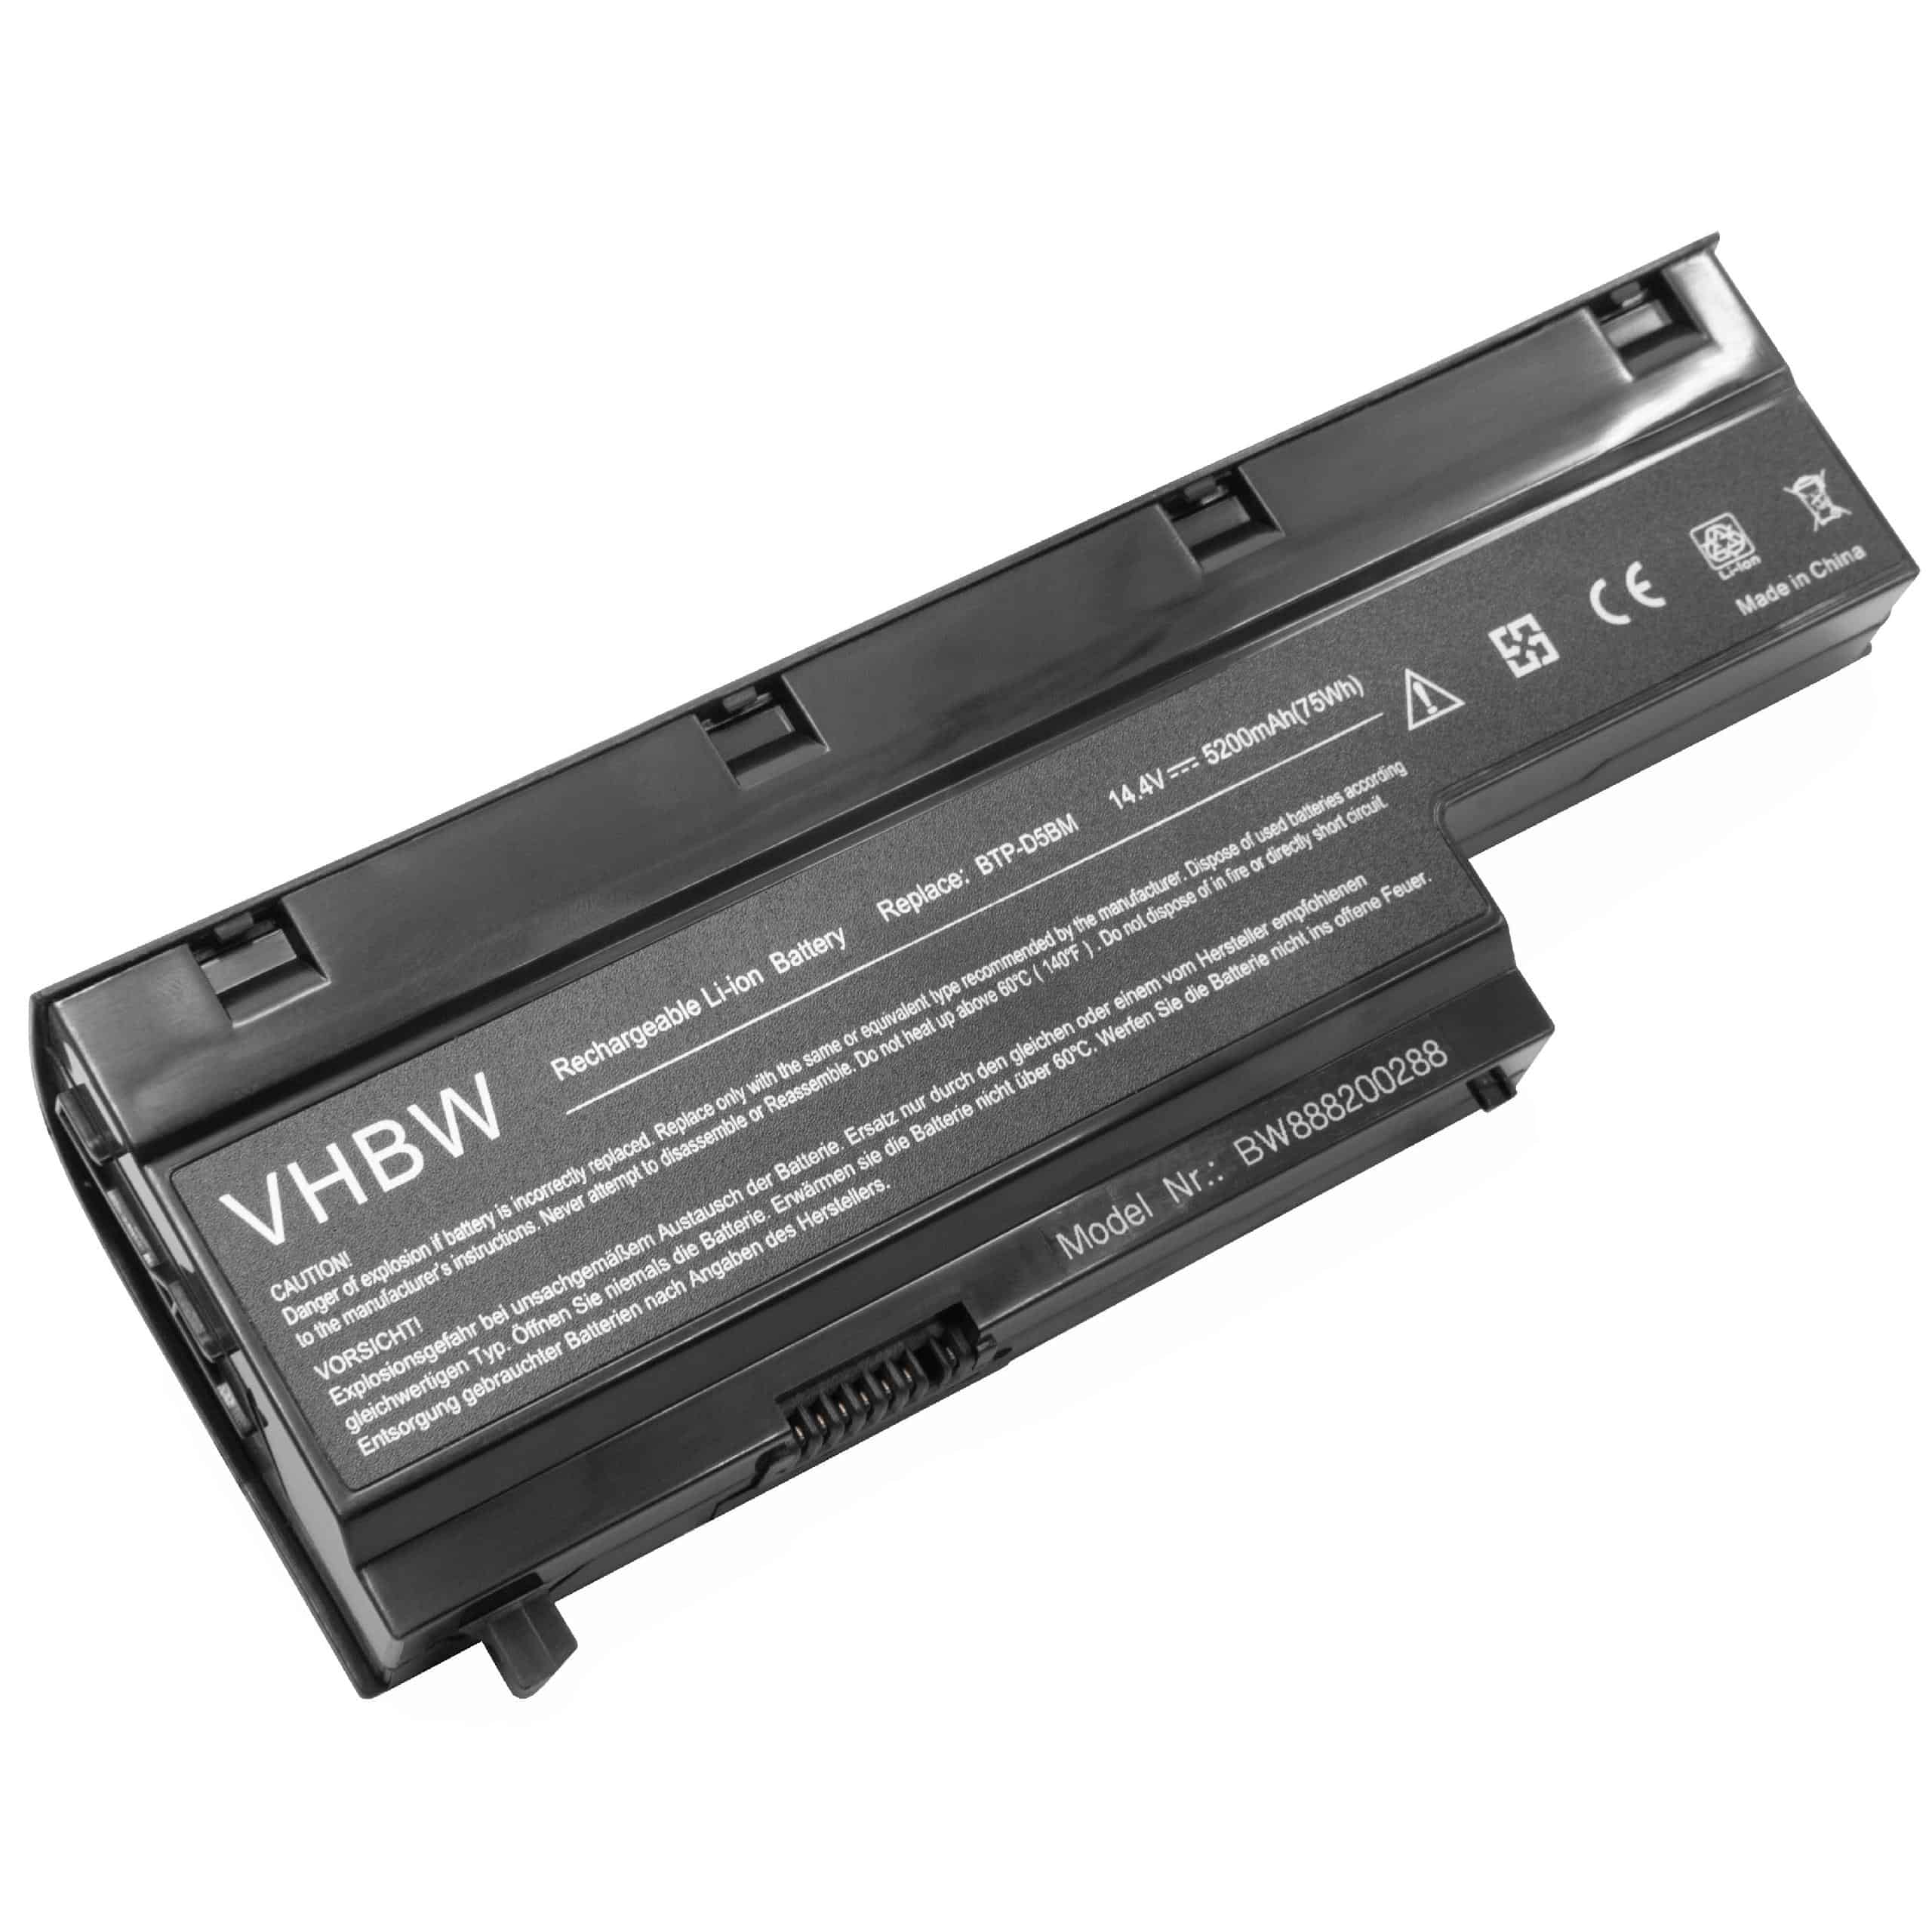 Batería reemplaza Medion 40029778, 40029779, BTP-D4BM para notebook Medion - 5200 mAh 14,4 V Li-Ion negro